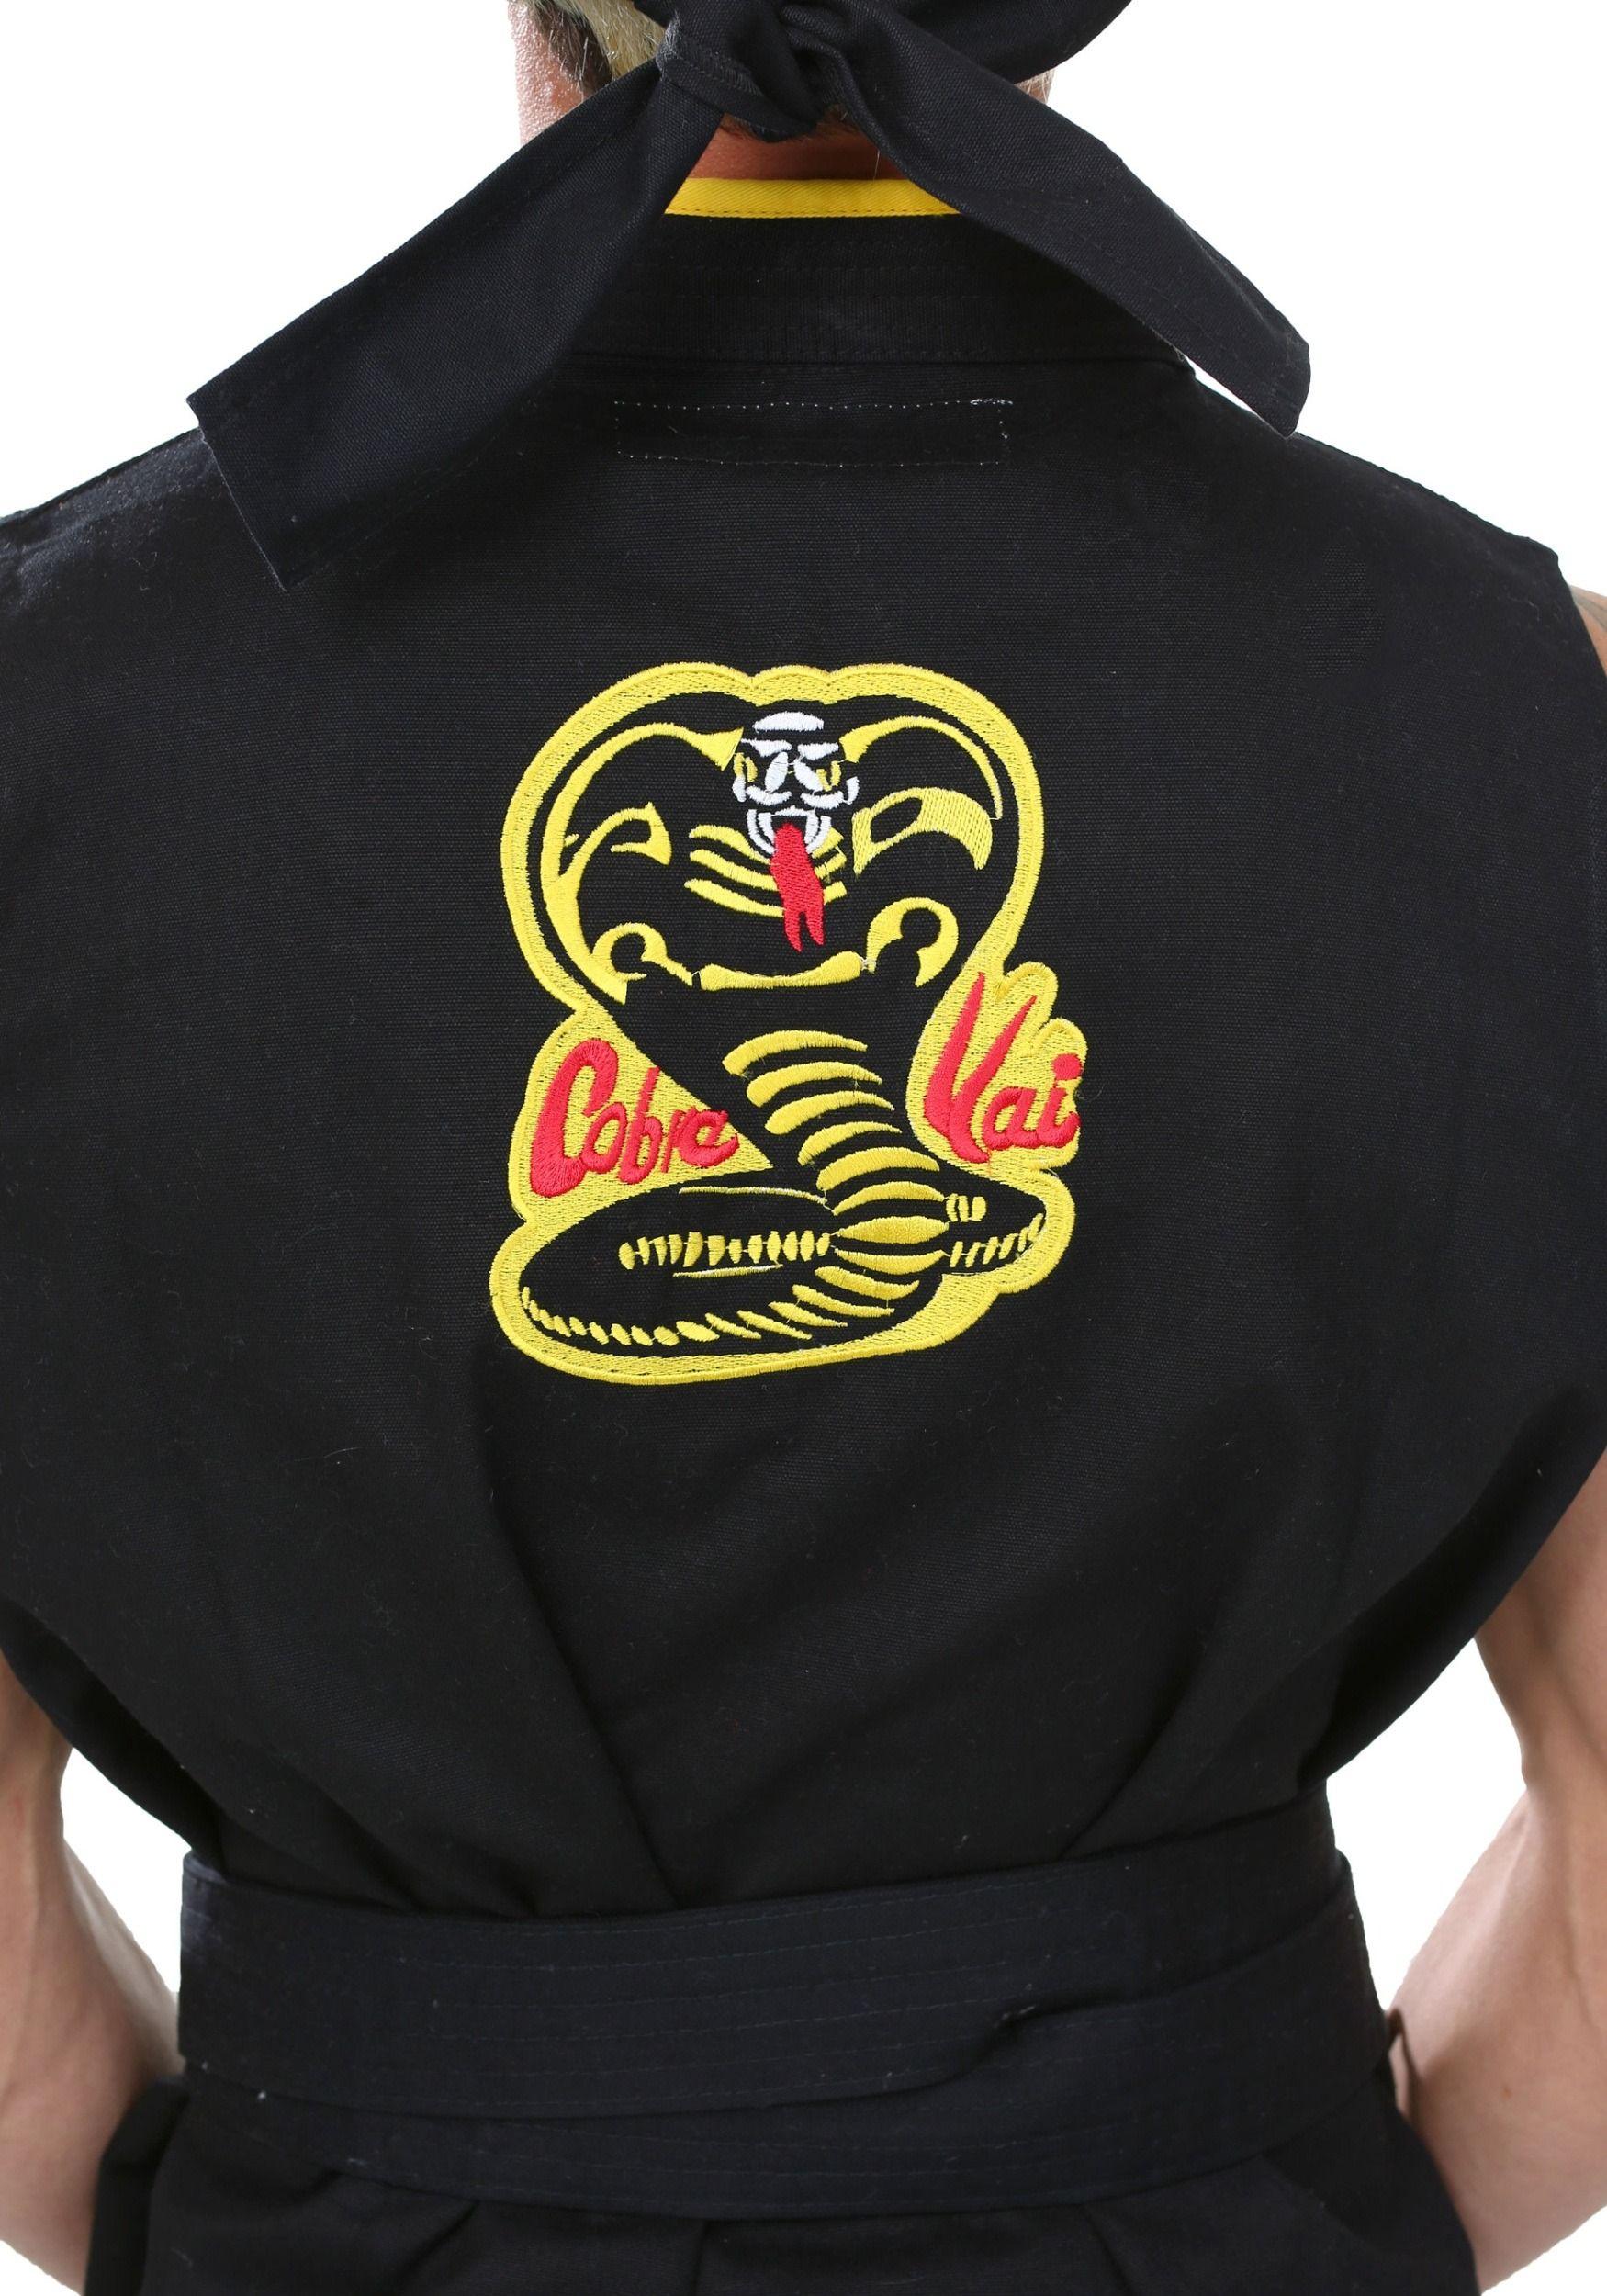 Cobra Kai Logo - Super Elite Cobra Kai Costume